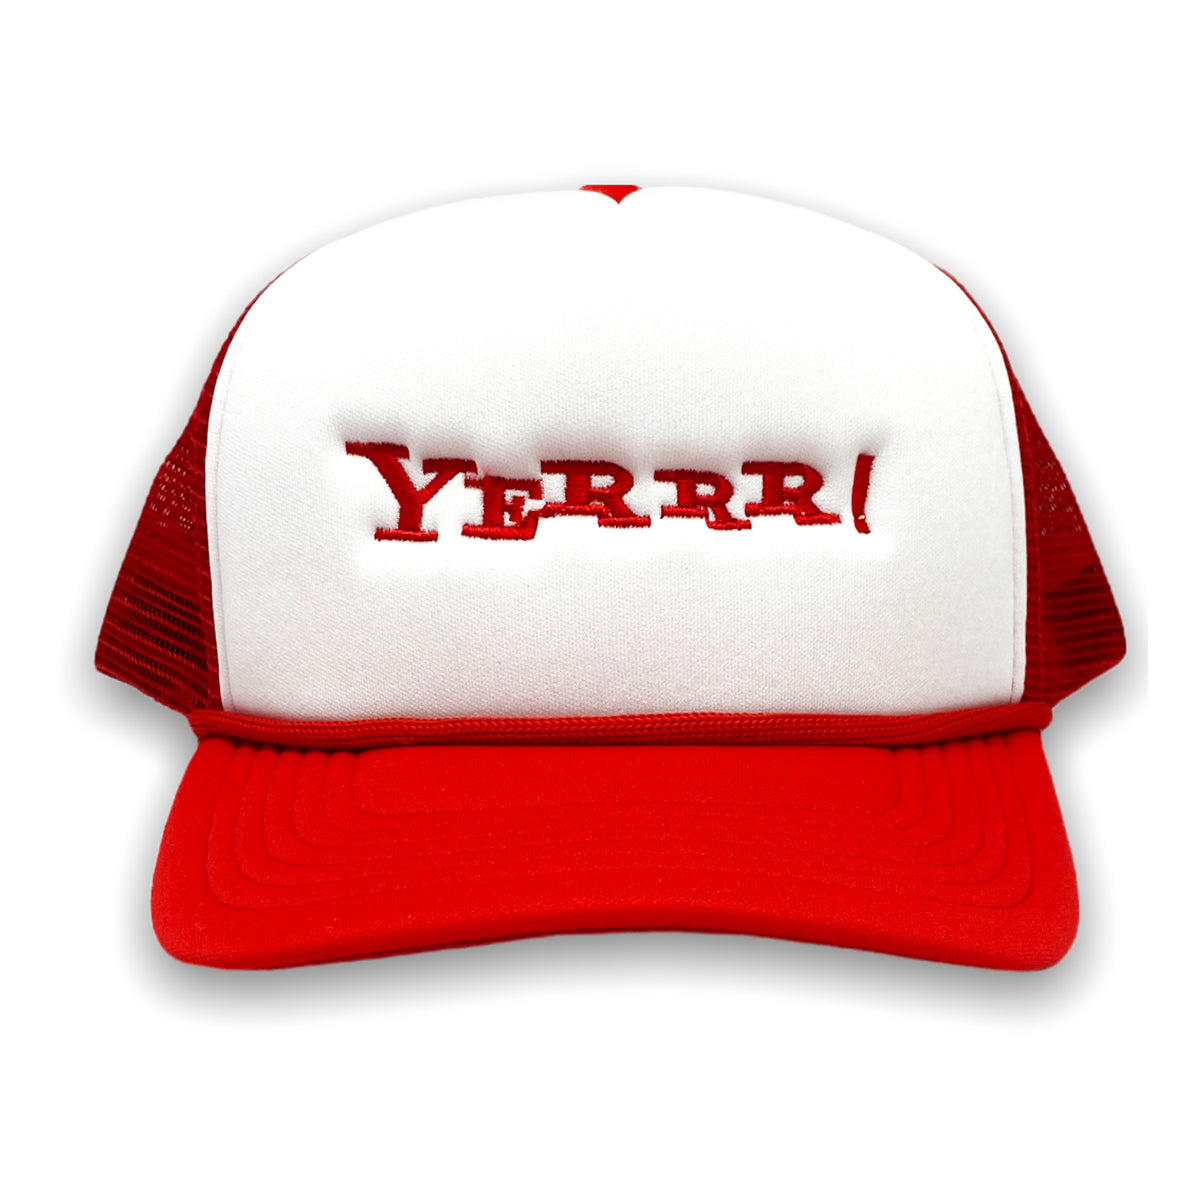 Yerrrhoo! Trucker Hat (Red/White)